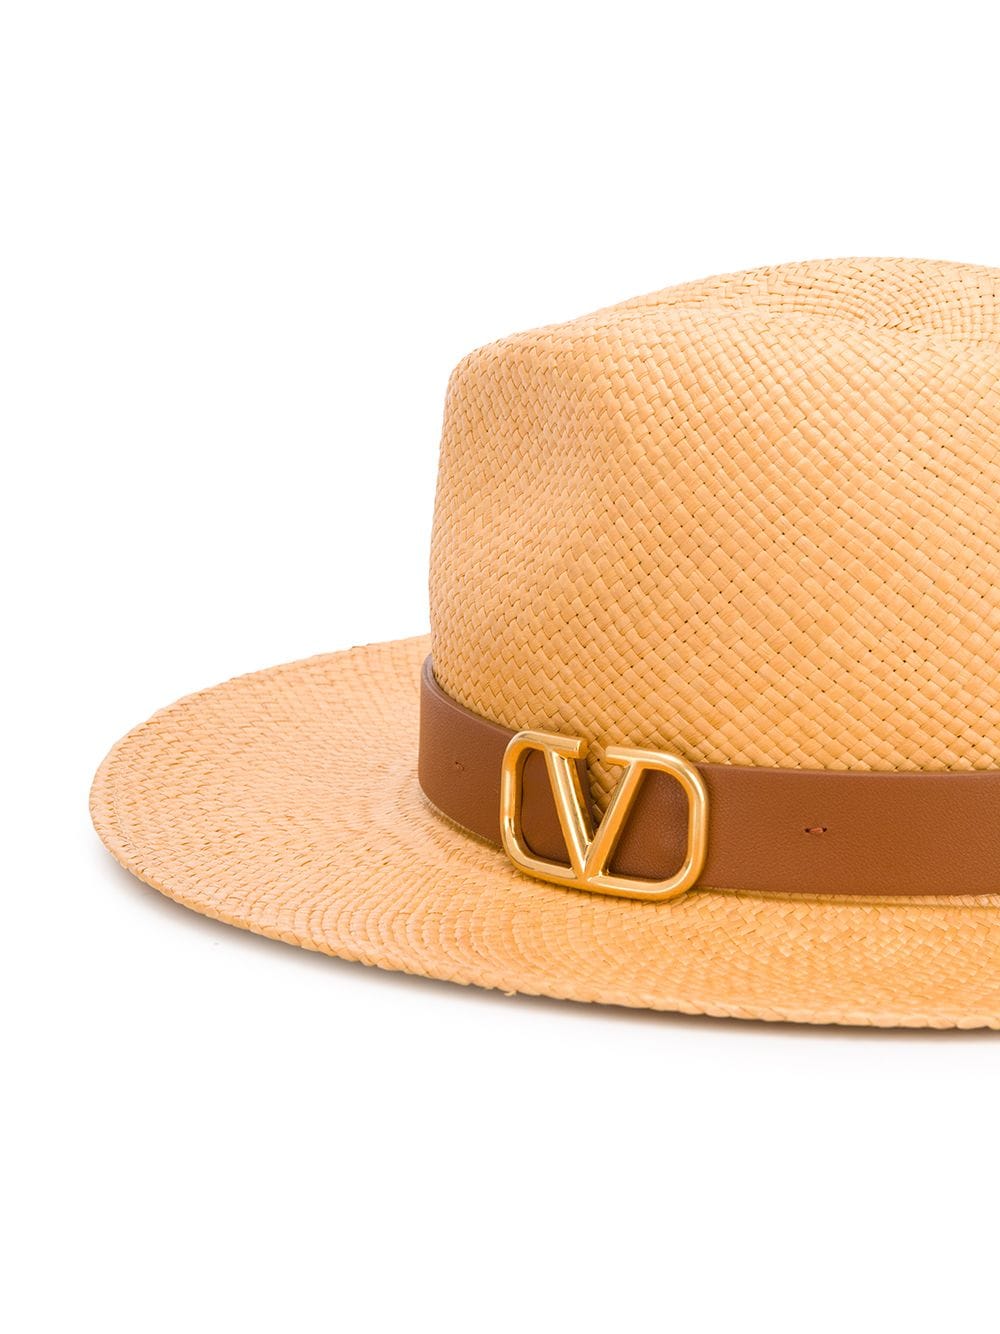 фото Valentino соломенная шляпа valentino garavani с логотипом vlogo